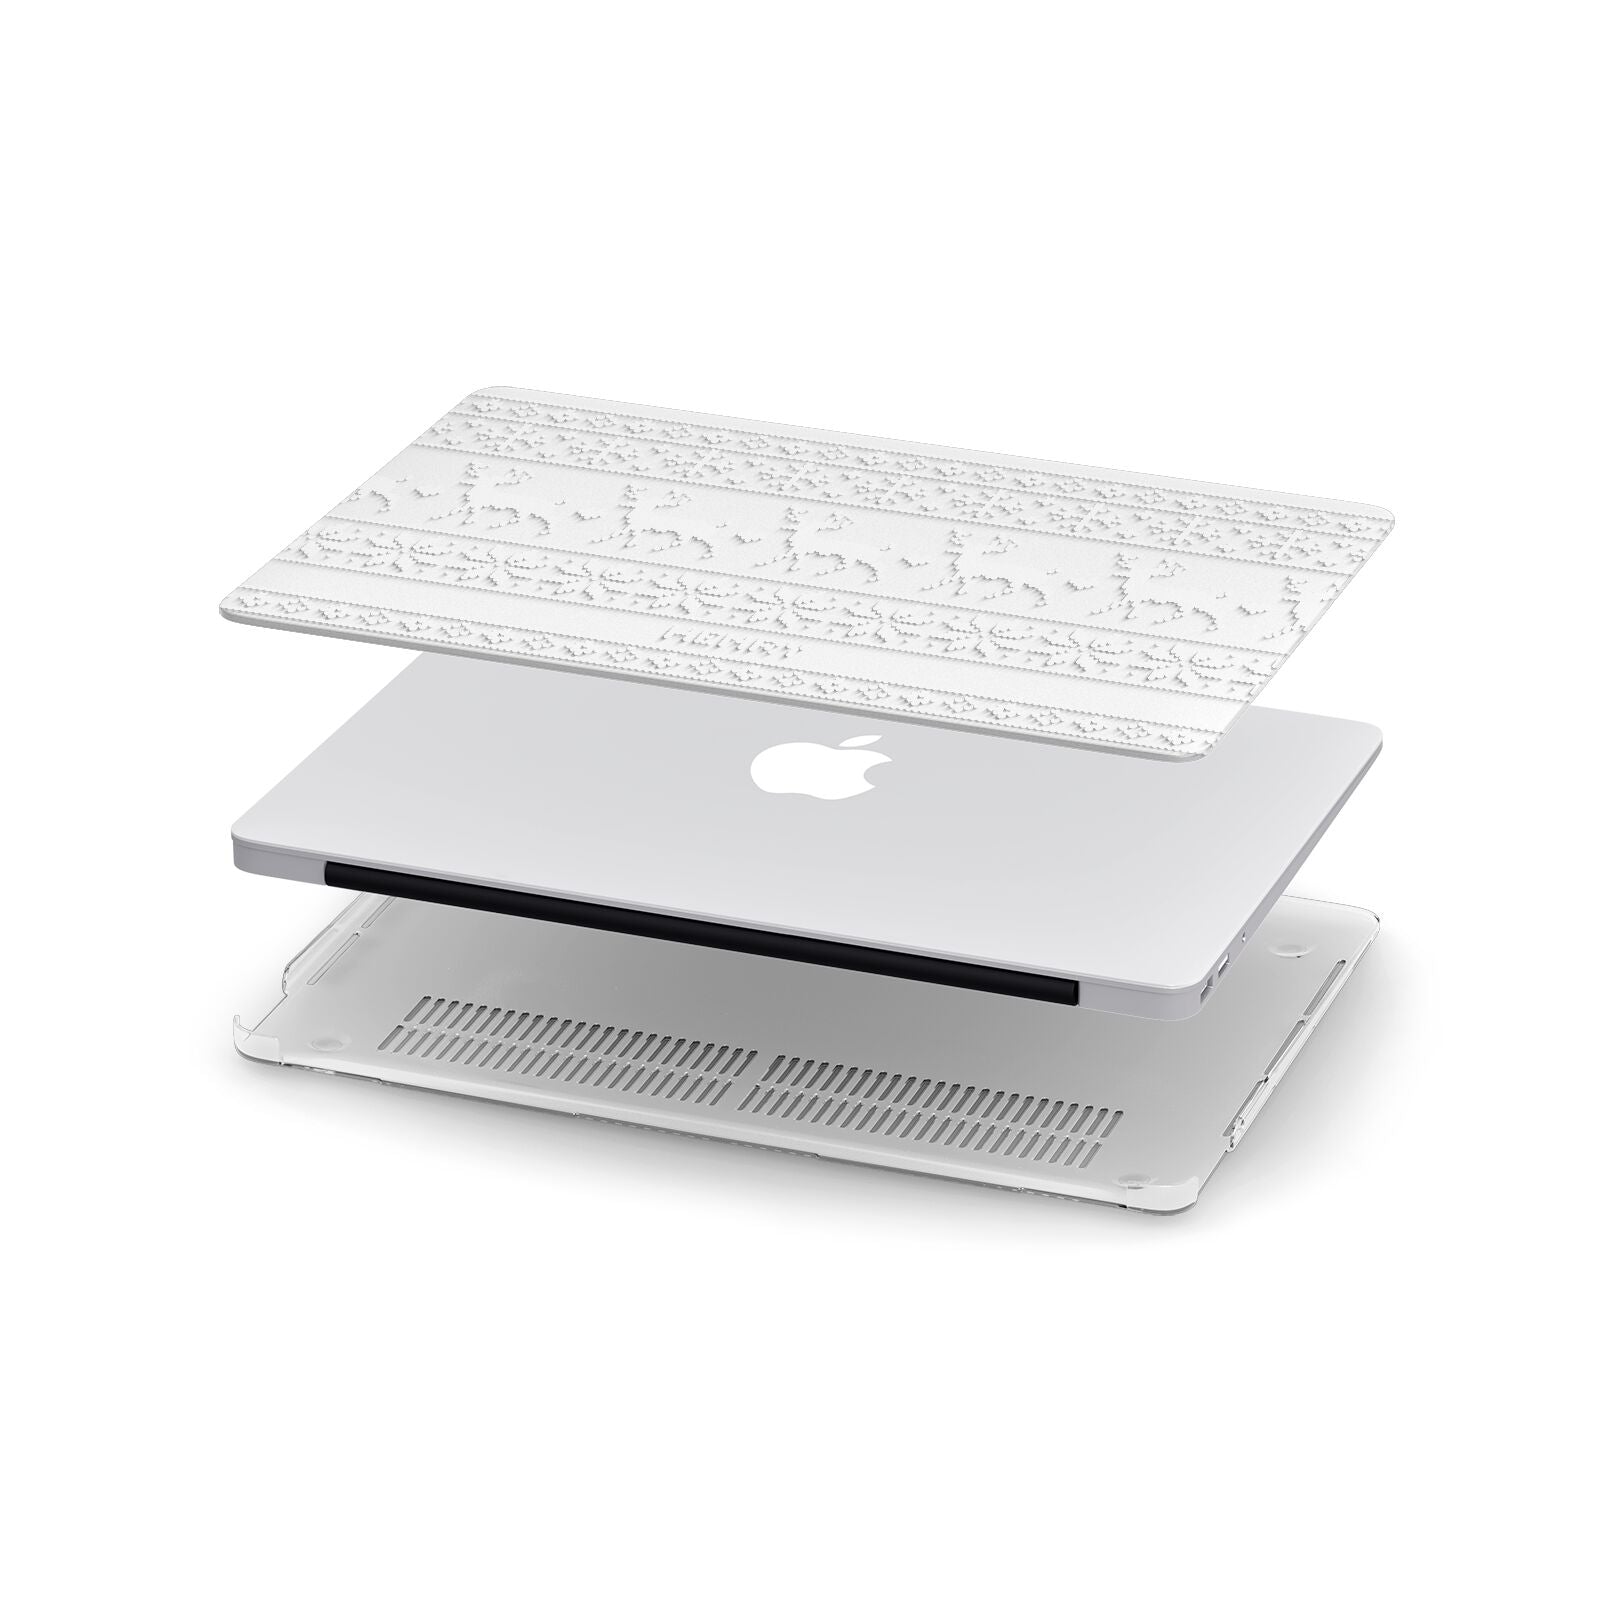 Personalised Christmas Jumper Apple MacBook Case in Detail